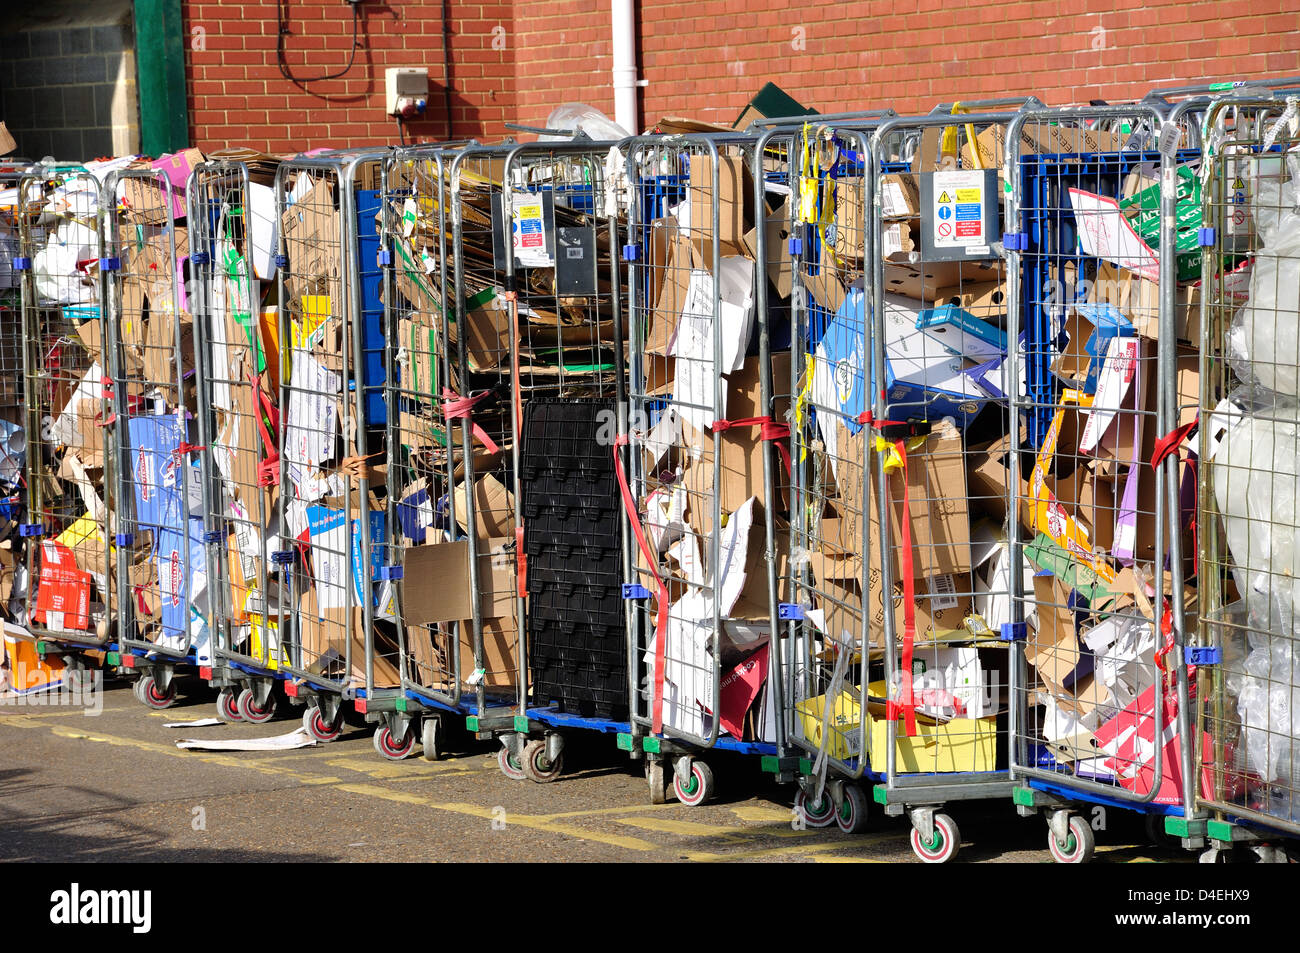 Cassonetti per il riciclaggio al supermercato Tesco, High Street, Feltham, London Borough di Hounslow, Greater London, England, Regno Unito Foto Stock